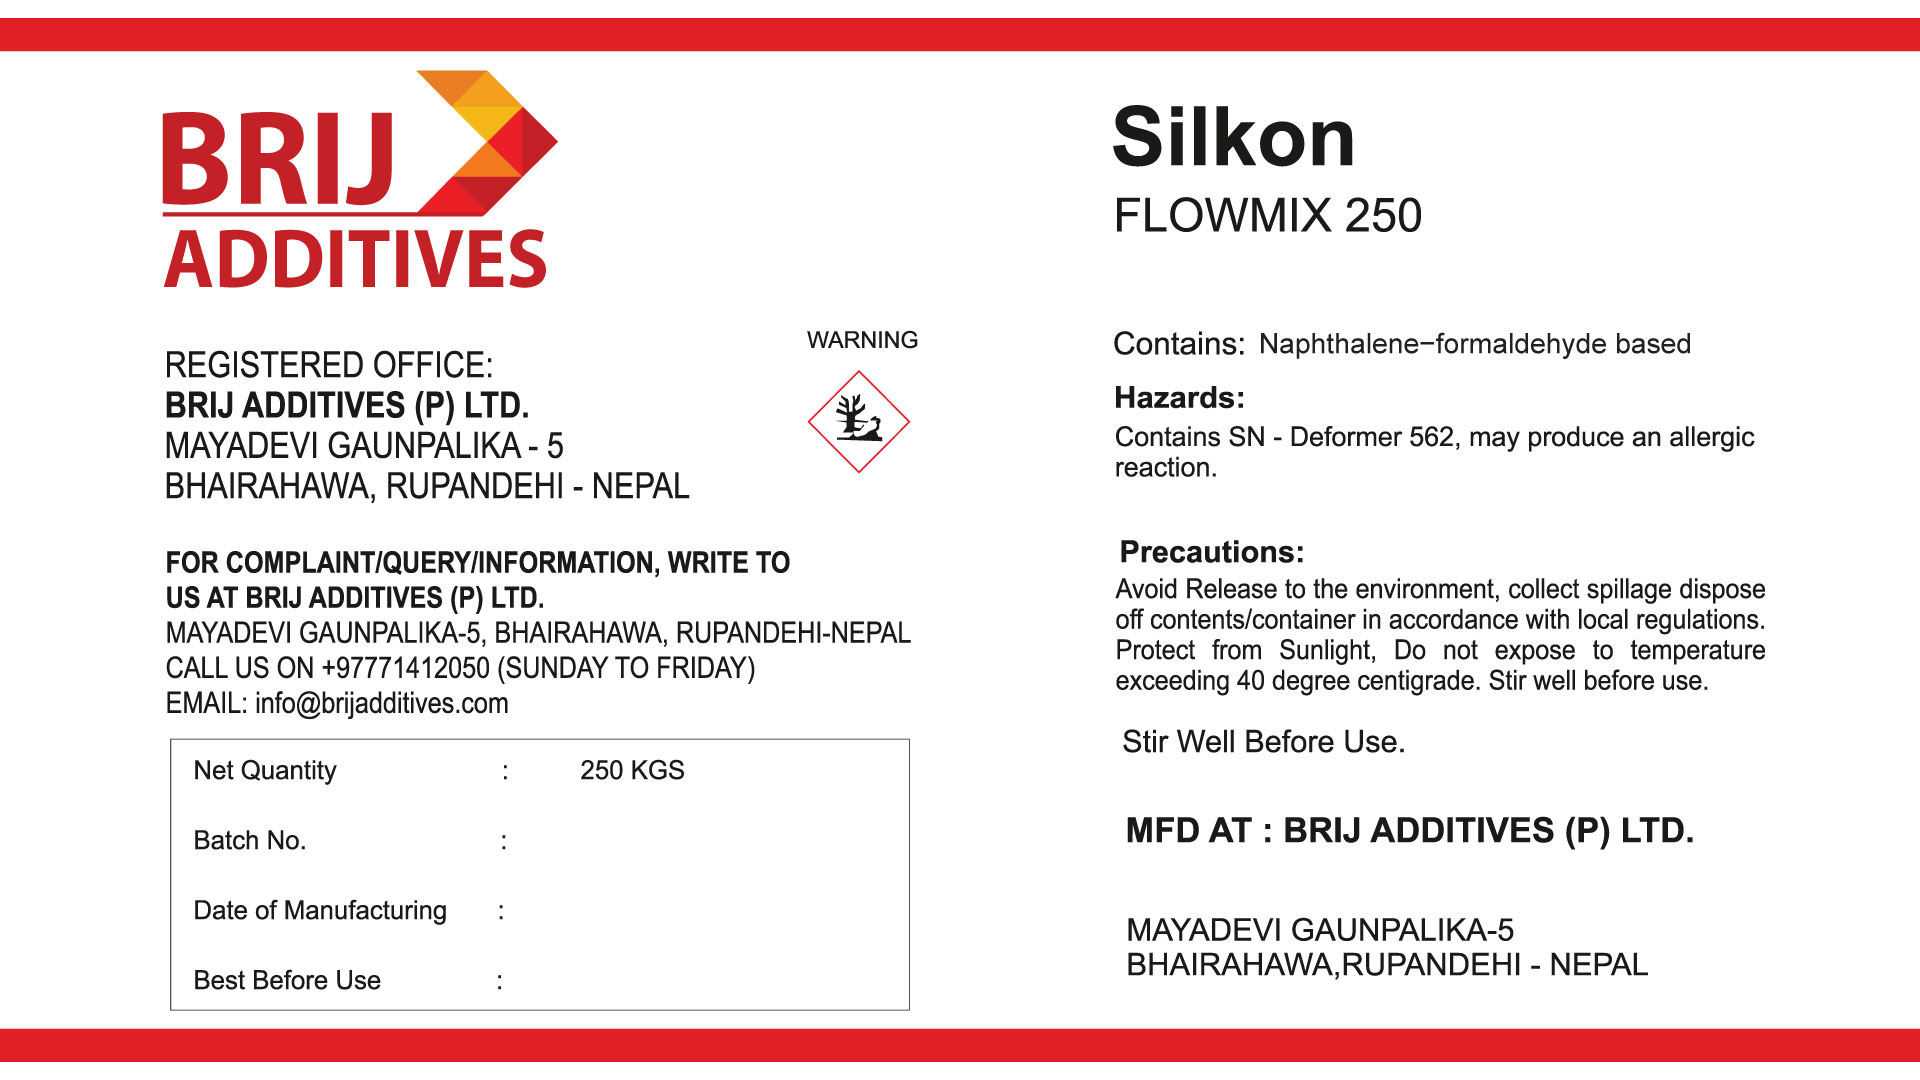 Silkon Flowmix 250